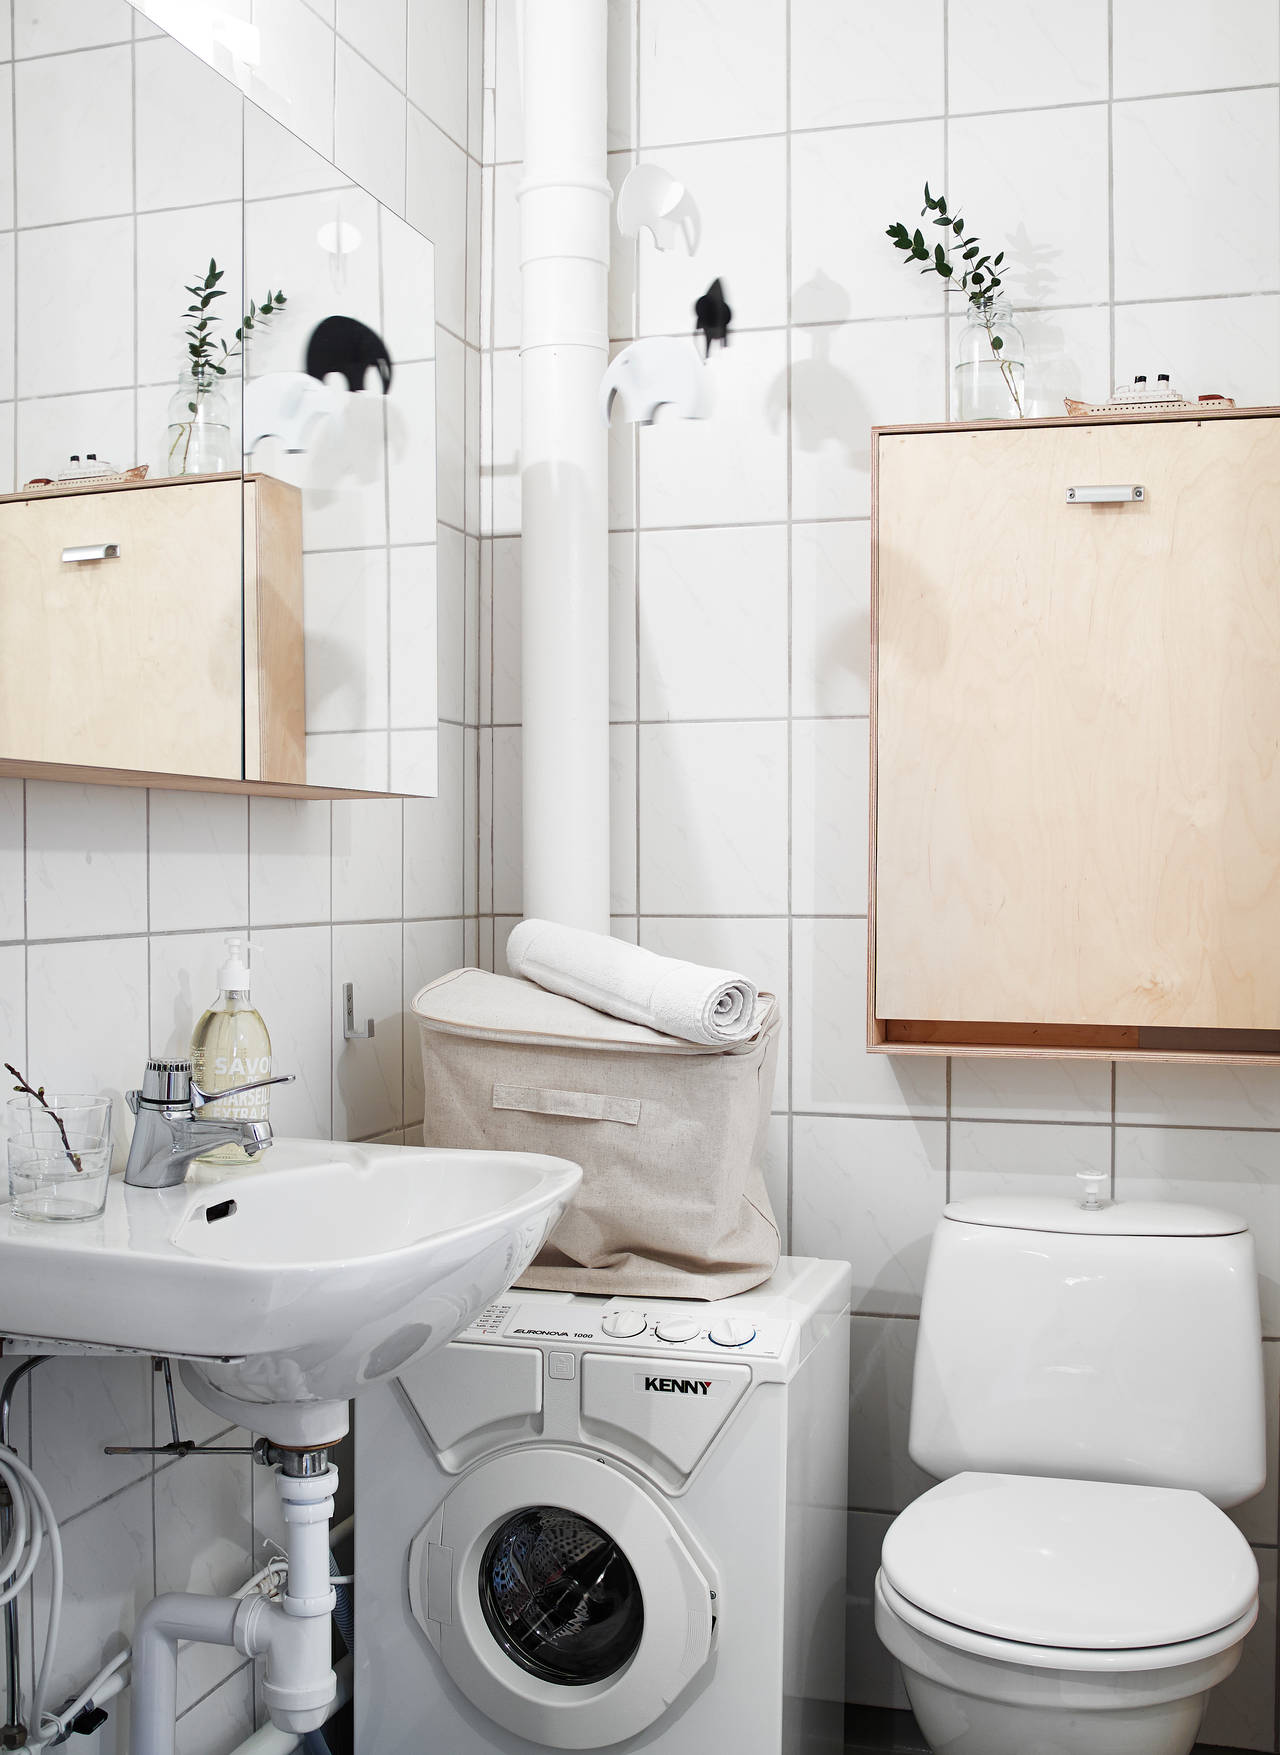 Badrumsinspiration - standardbadrum med kakel, klinker och tvättmaskin